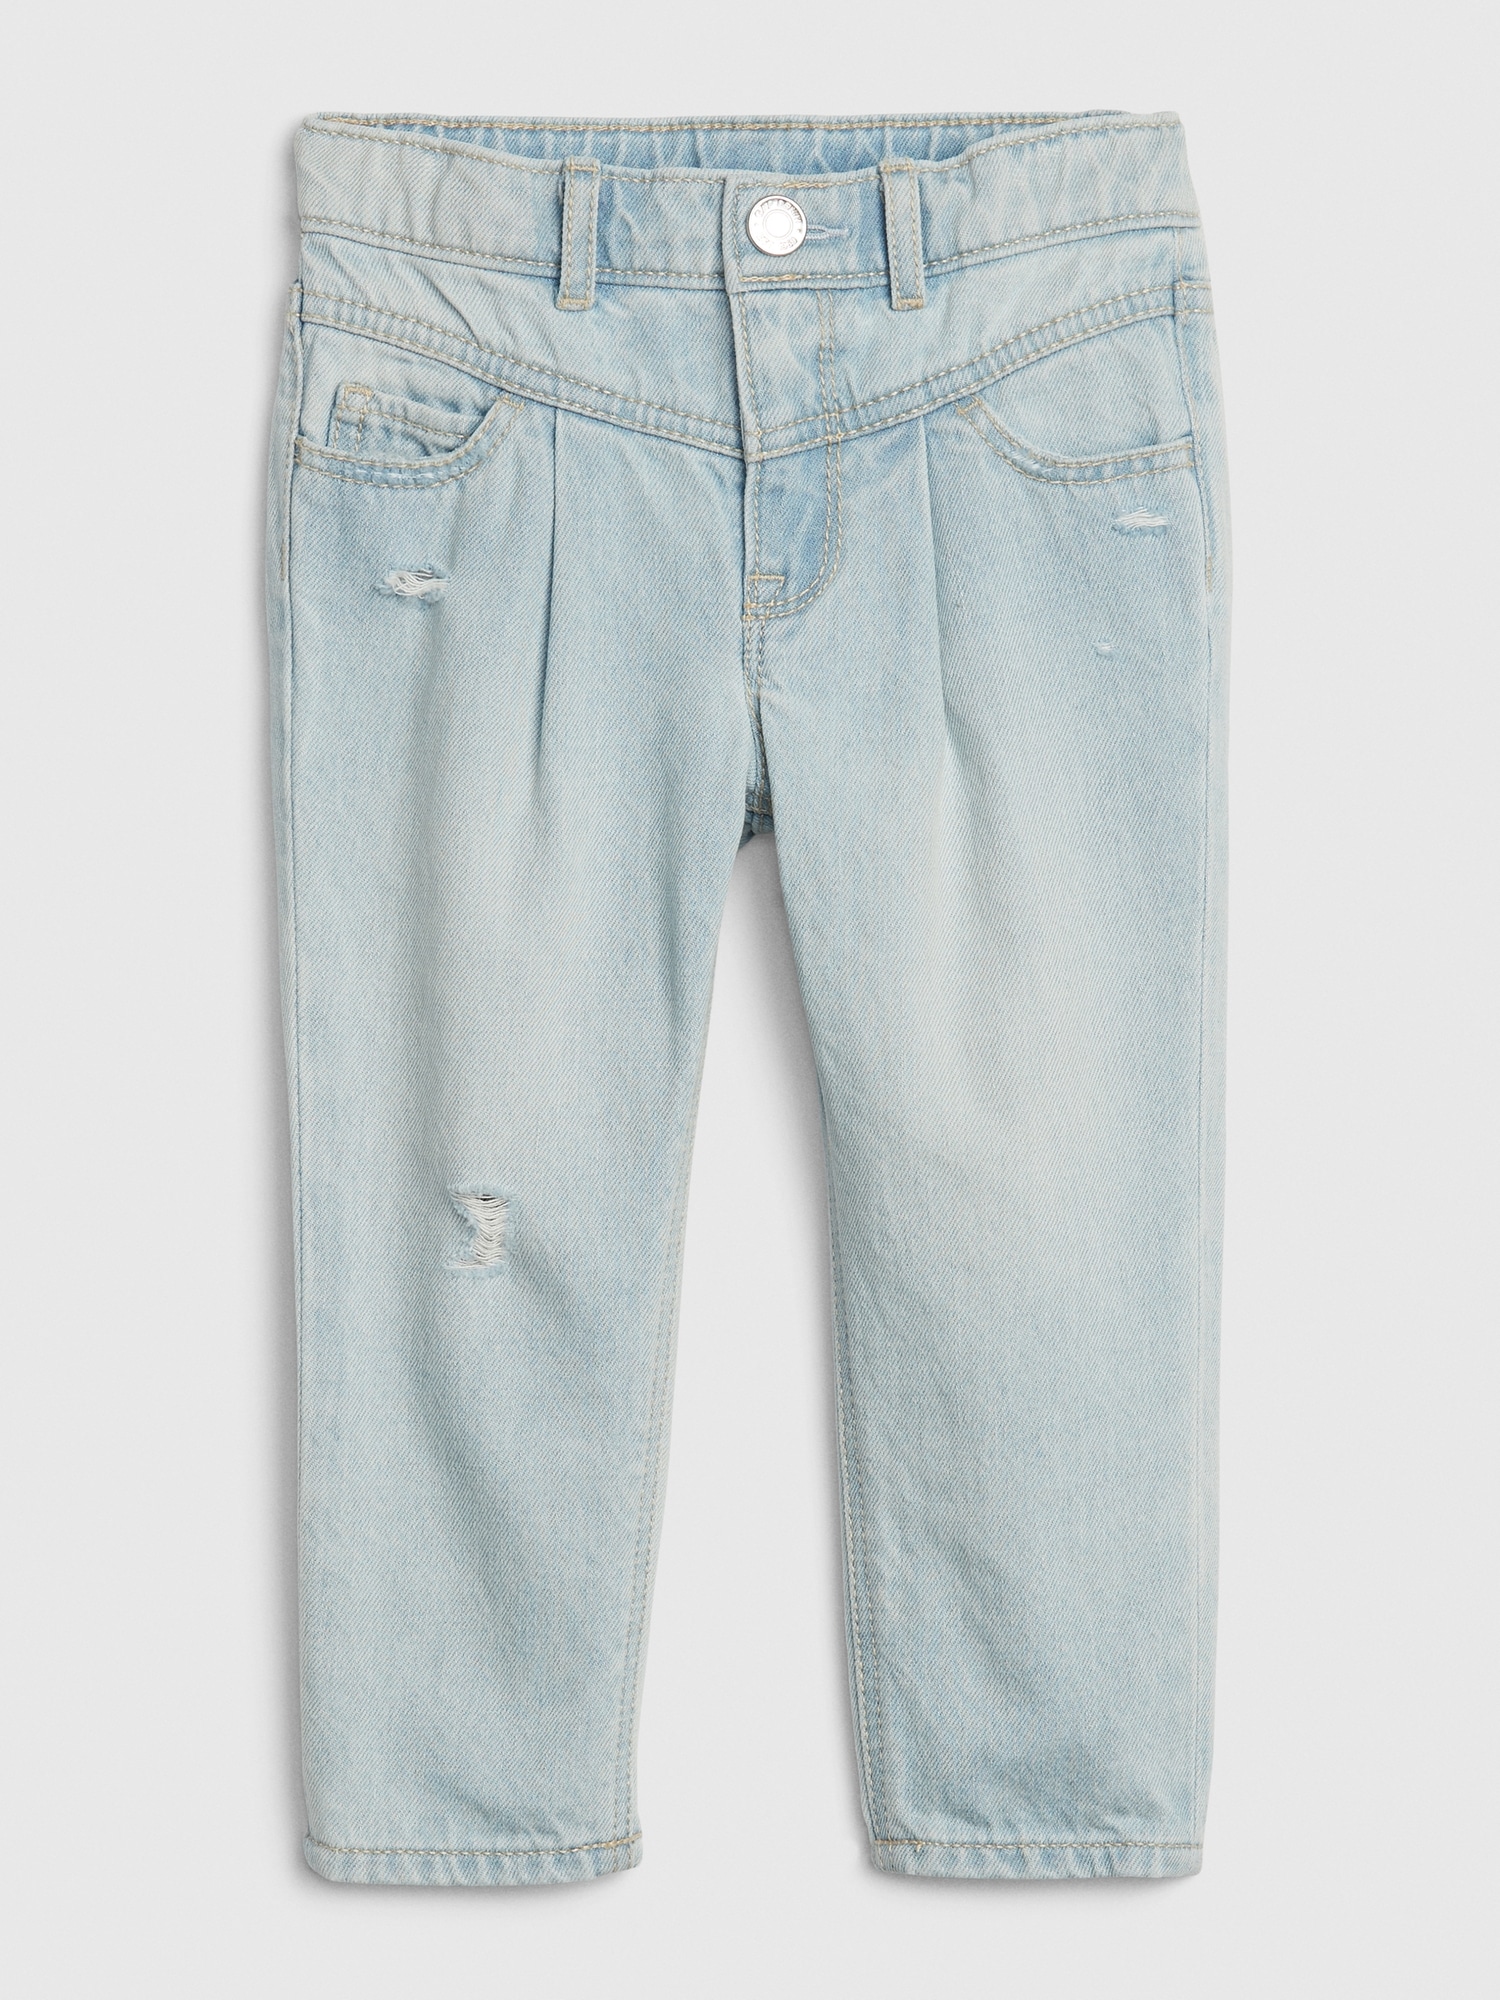 gap 100 cotton jeans